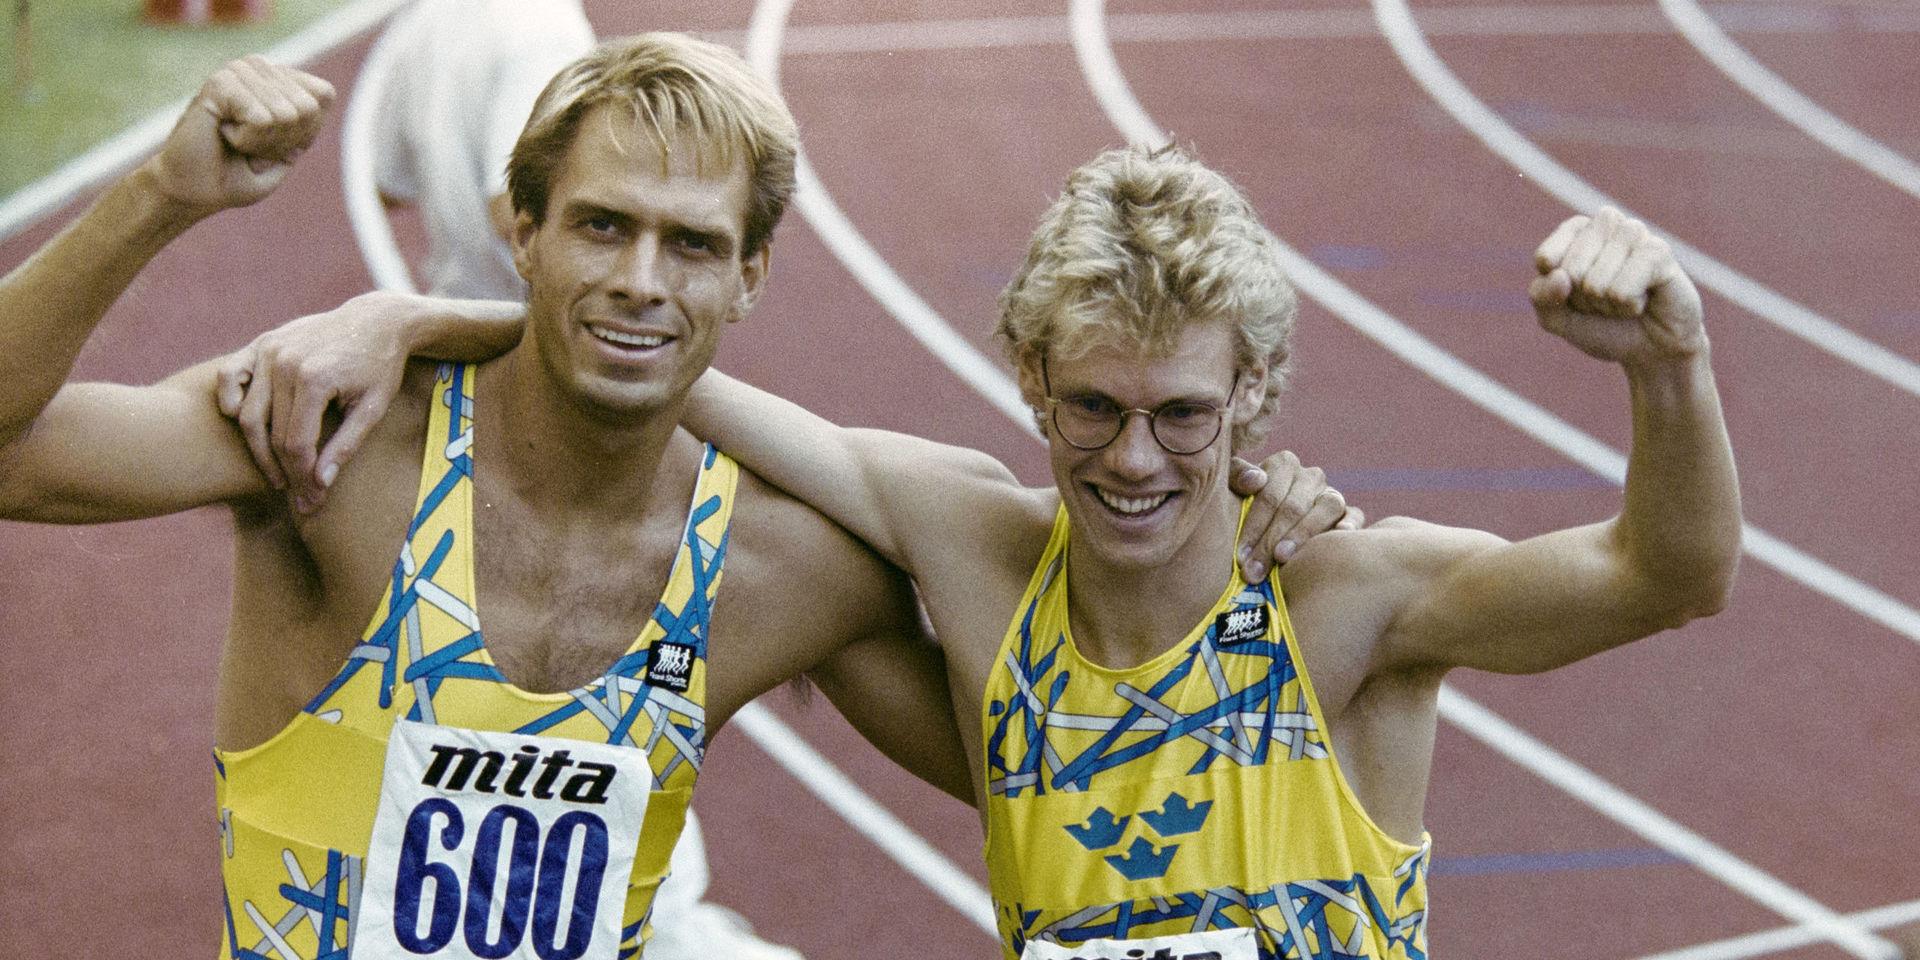 Vid EM i Split 1990 blev det två svenska medaljer på 400 meter häck. Sven Nylander tog silver och Niklas Wallenlind brons. Guldet gick till britten Kriss Akabusi.